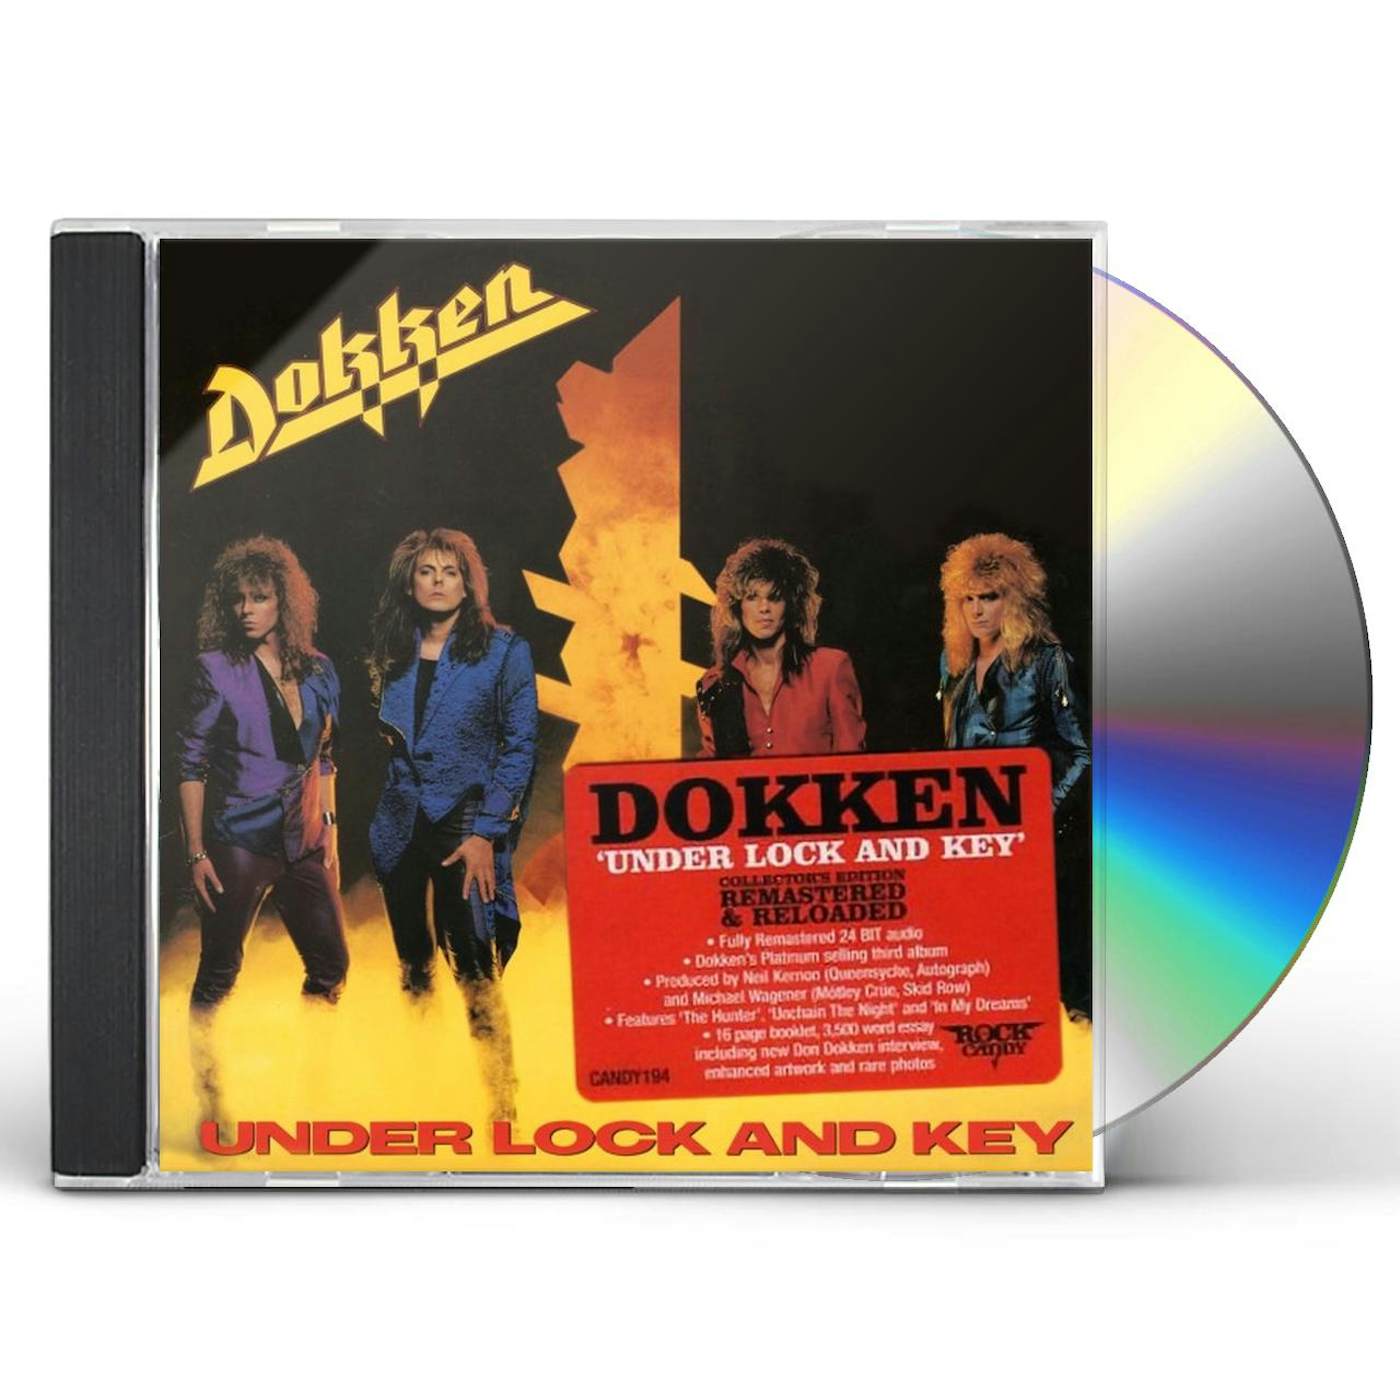 Under Lock and Key - Album by Dokken